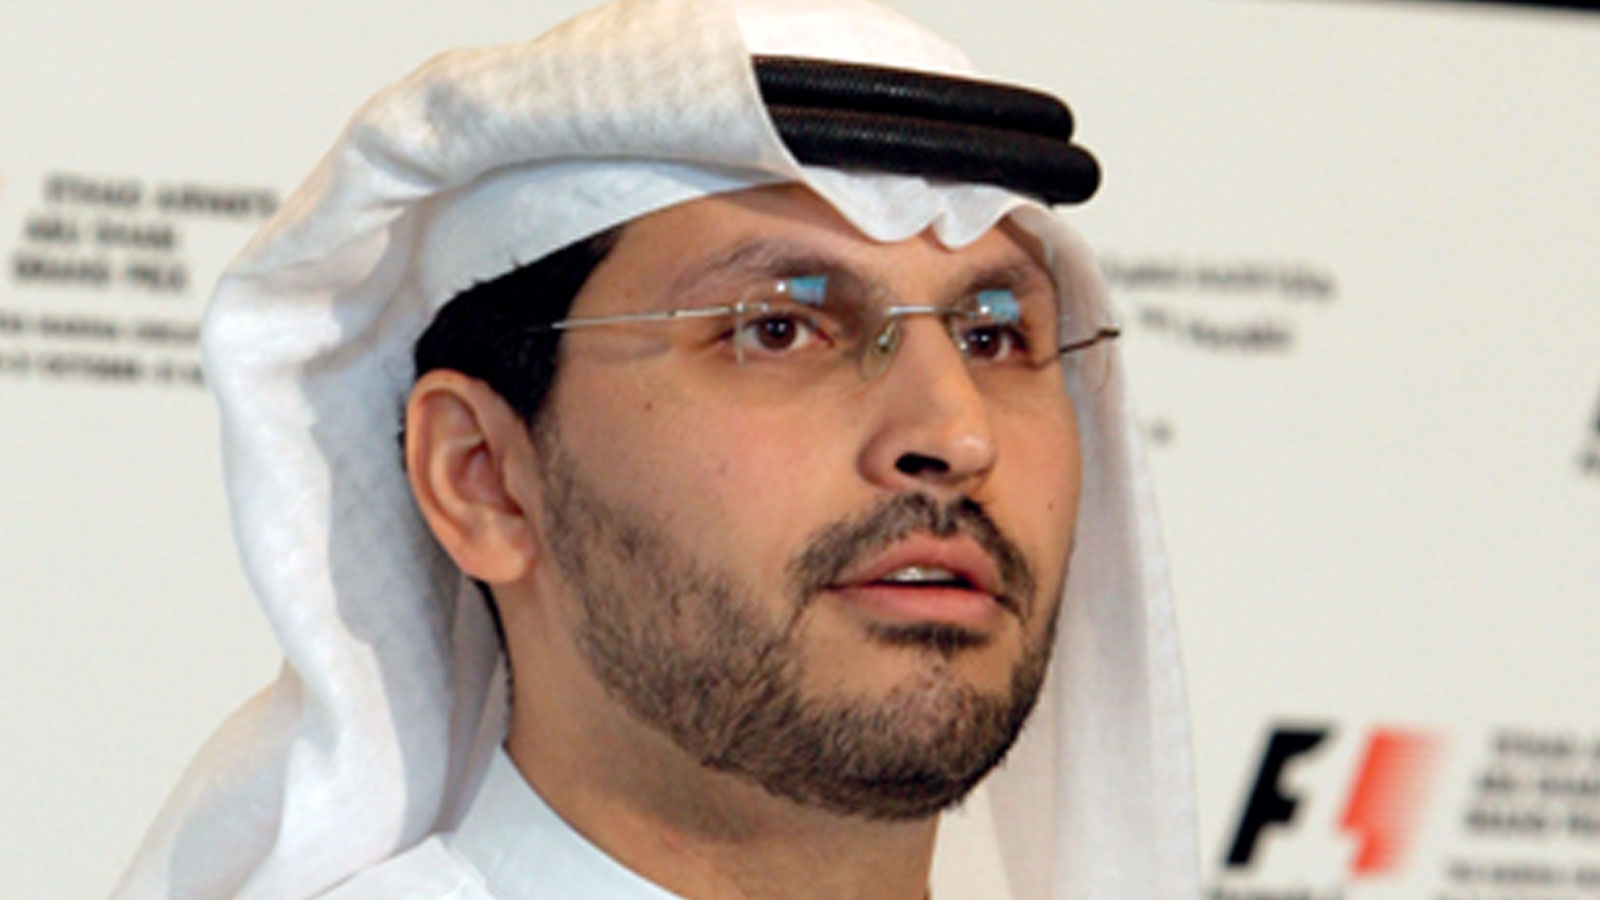 شركة مبادلة الإماراتية - الرئيس التنفيذي لمجموعة مبادلة خلدون خليفة المبارك